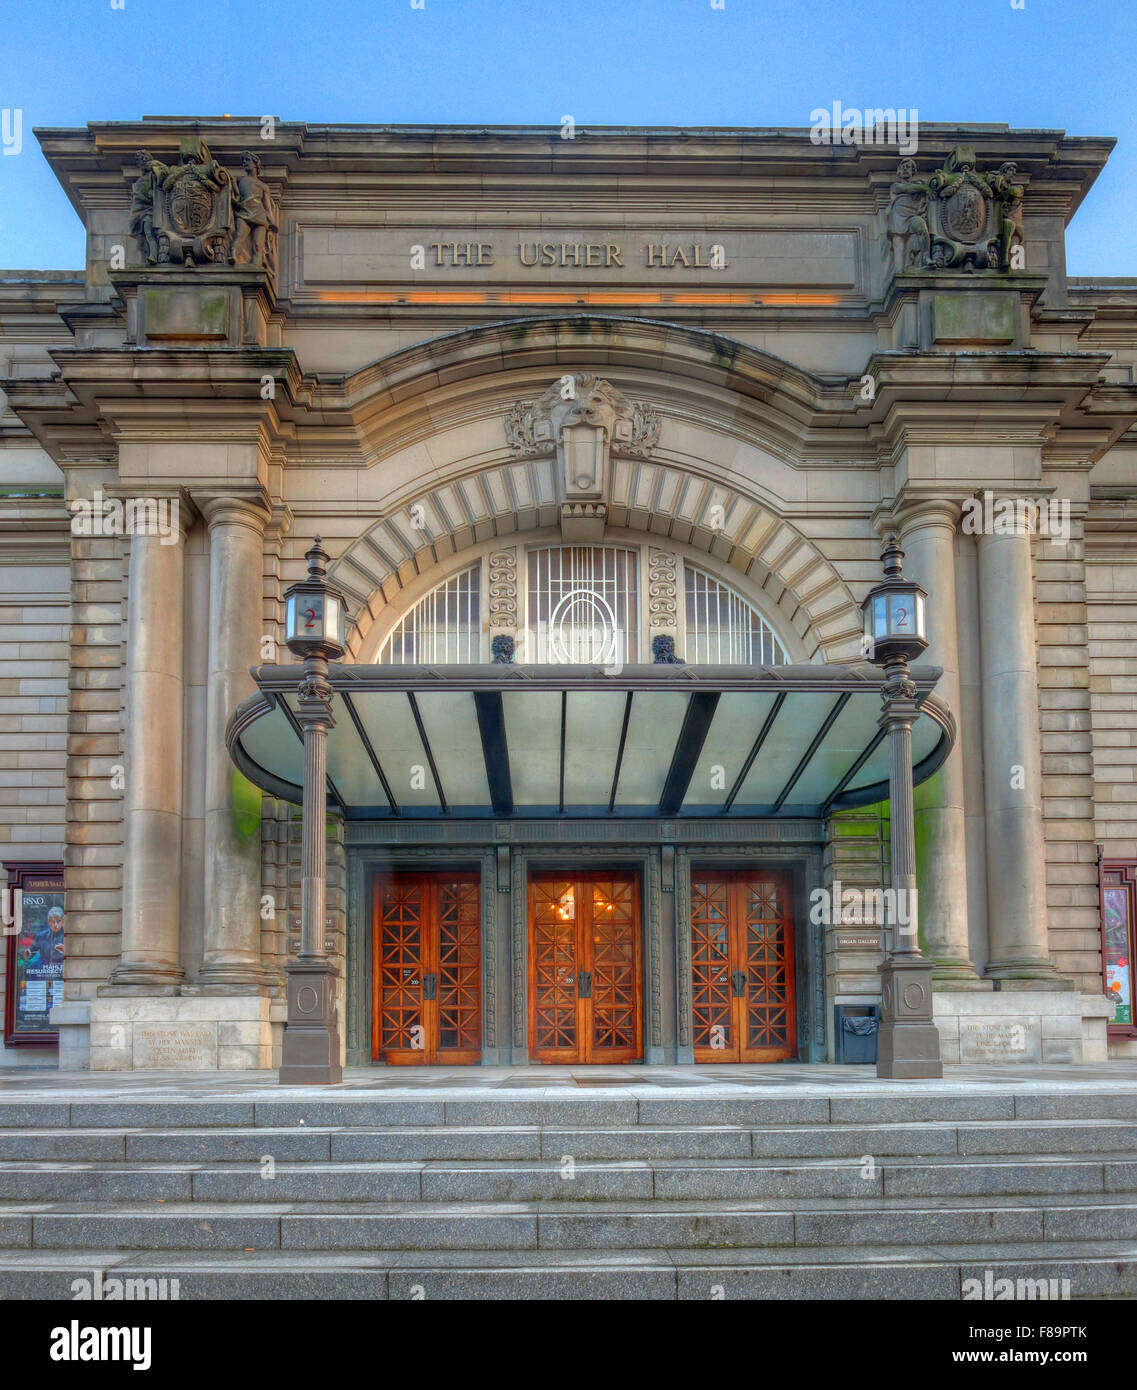 Usher Hall, luogo di ritrovo artistico e teatrale, Lothian Road, Edimburgo, Scozia, Regno Unito, EH1 2EA Foto Stock